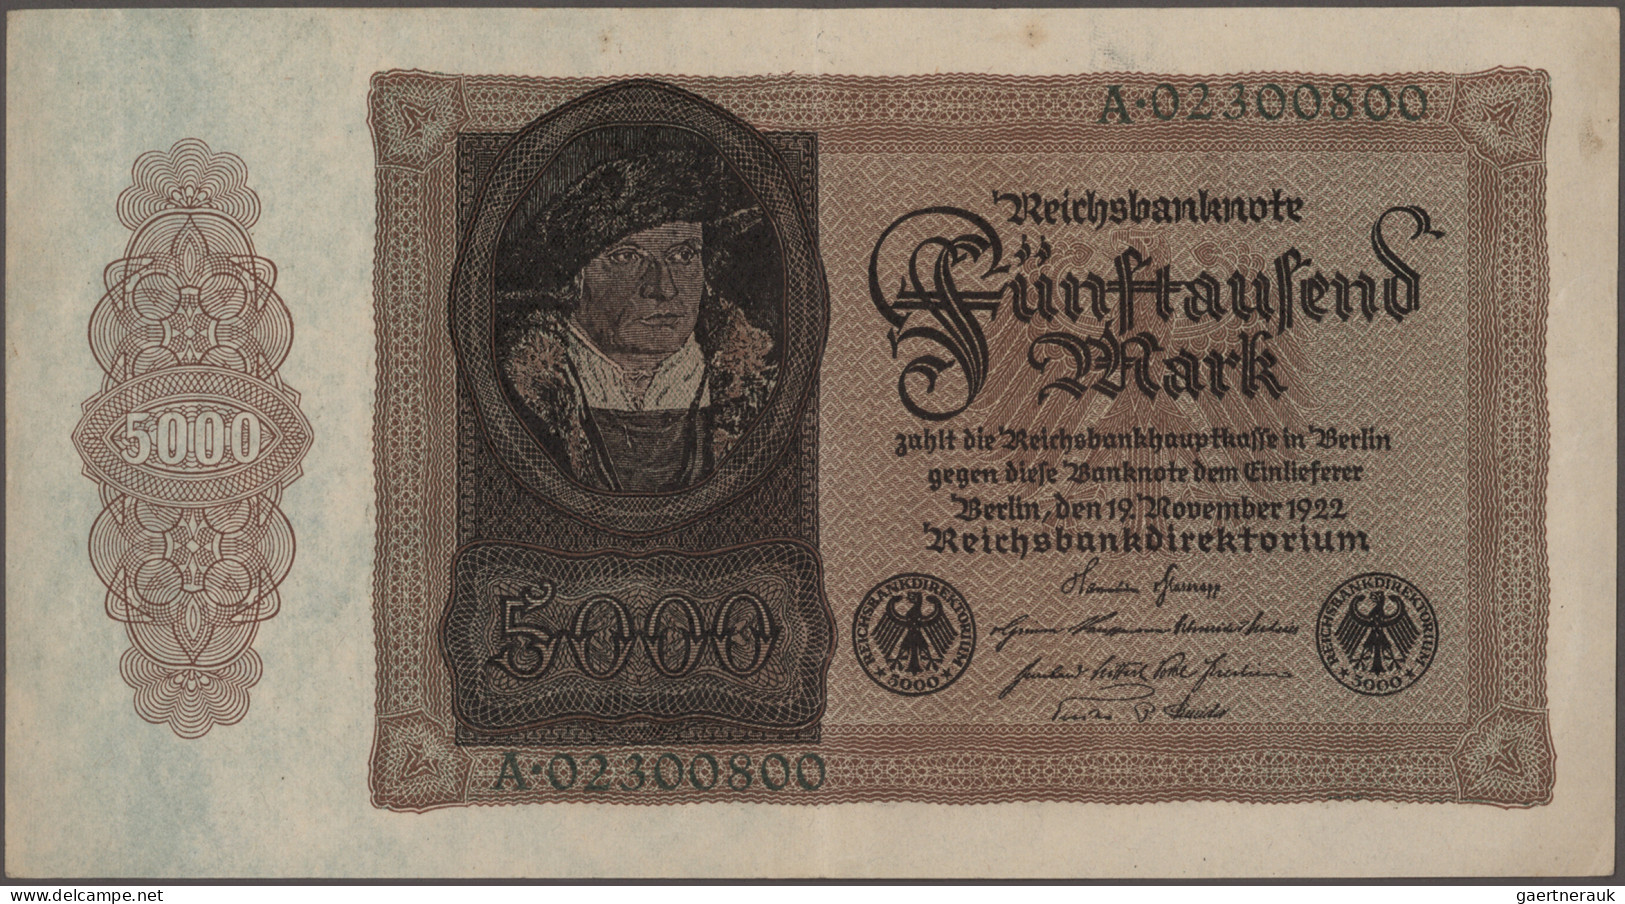 Deutschland - Deutsches Reich bis 1945: Schachtel mit über 300 Banknoten aus Deu